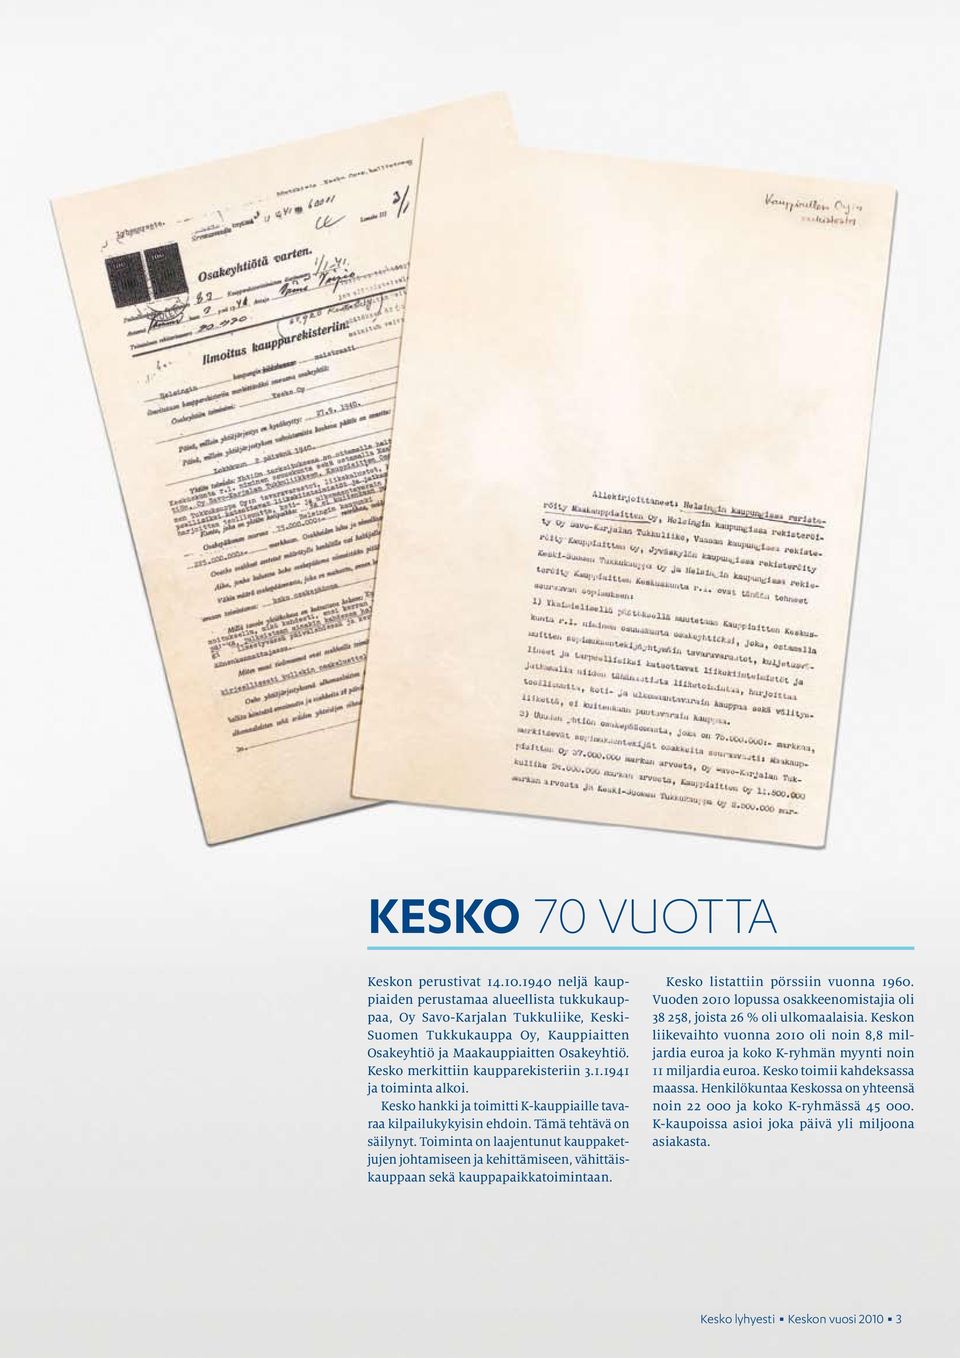 Kesko merkittiin kaupparekisteriin 3.1.1941 ja toiminta alkoi. Kesko hankki ja toimitti K-kauppiaille tavaraa kilpailukykyisin ehdoin. Tämä tehtävä on säilynyt.